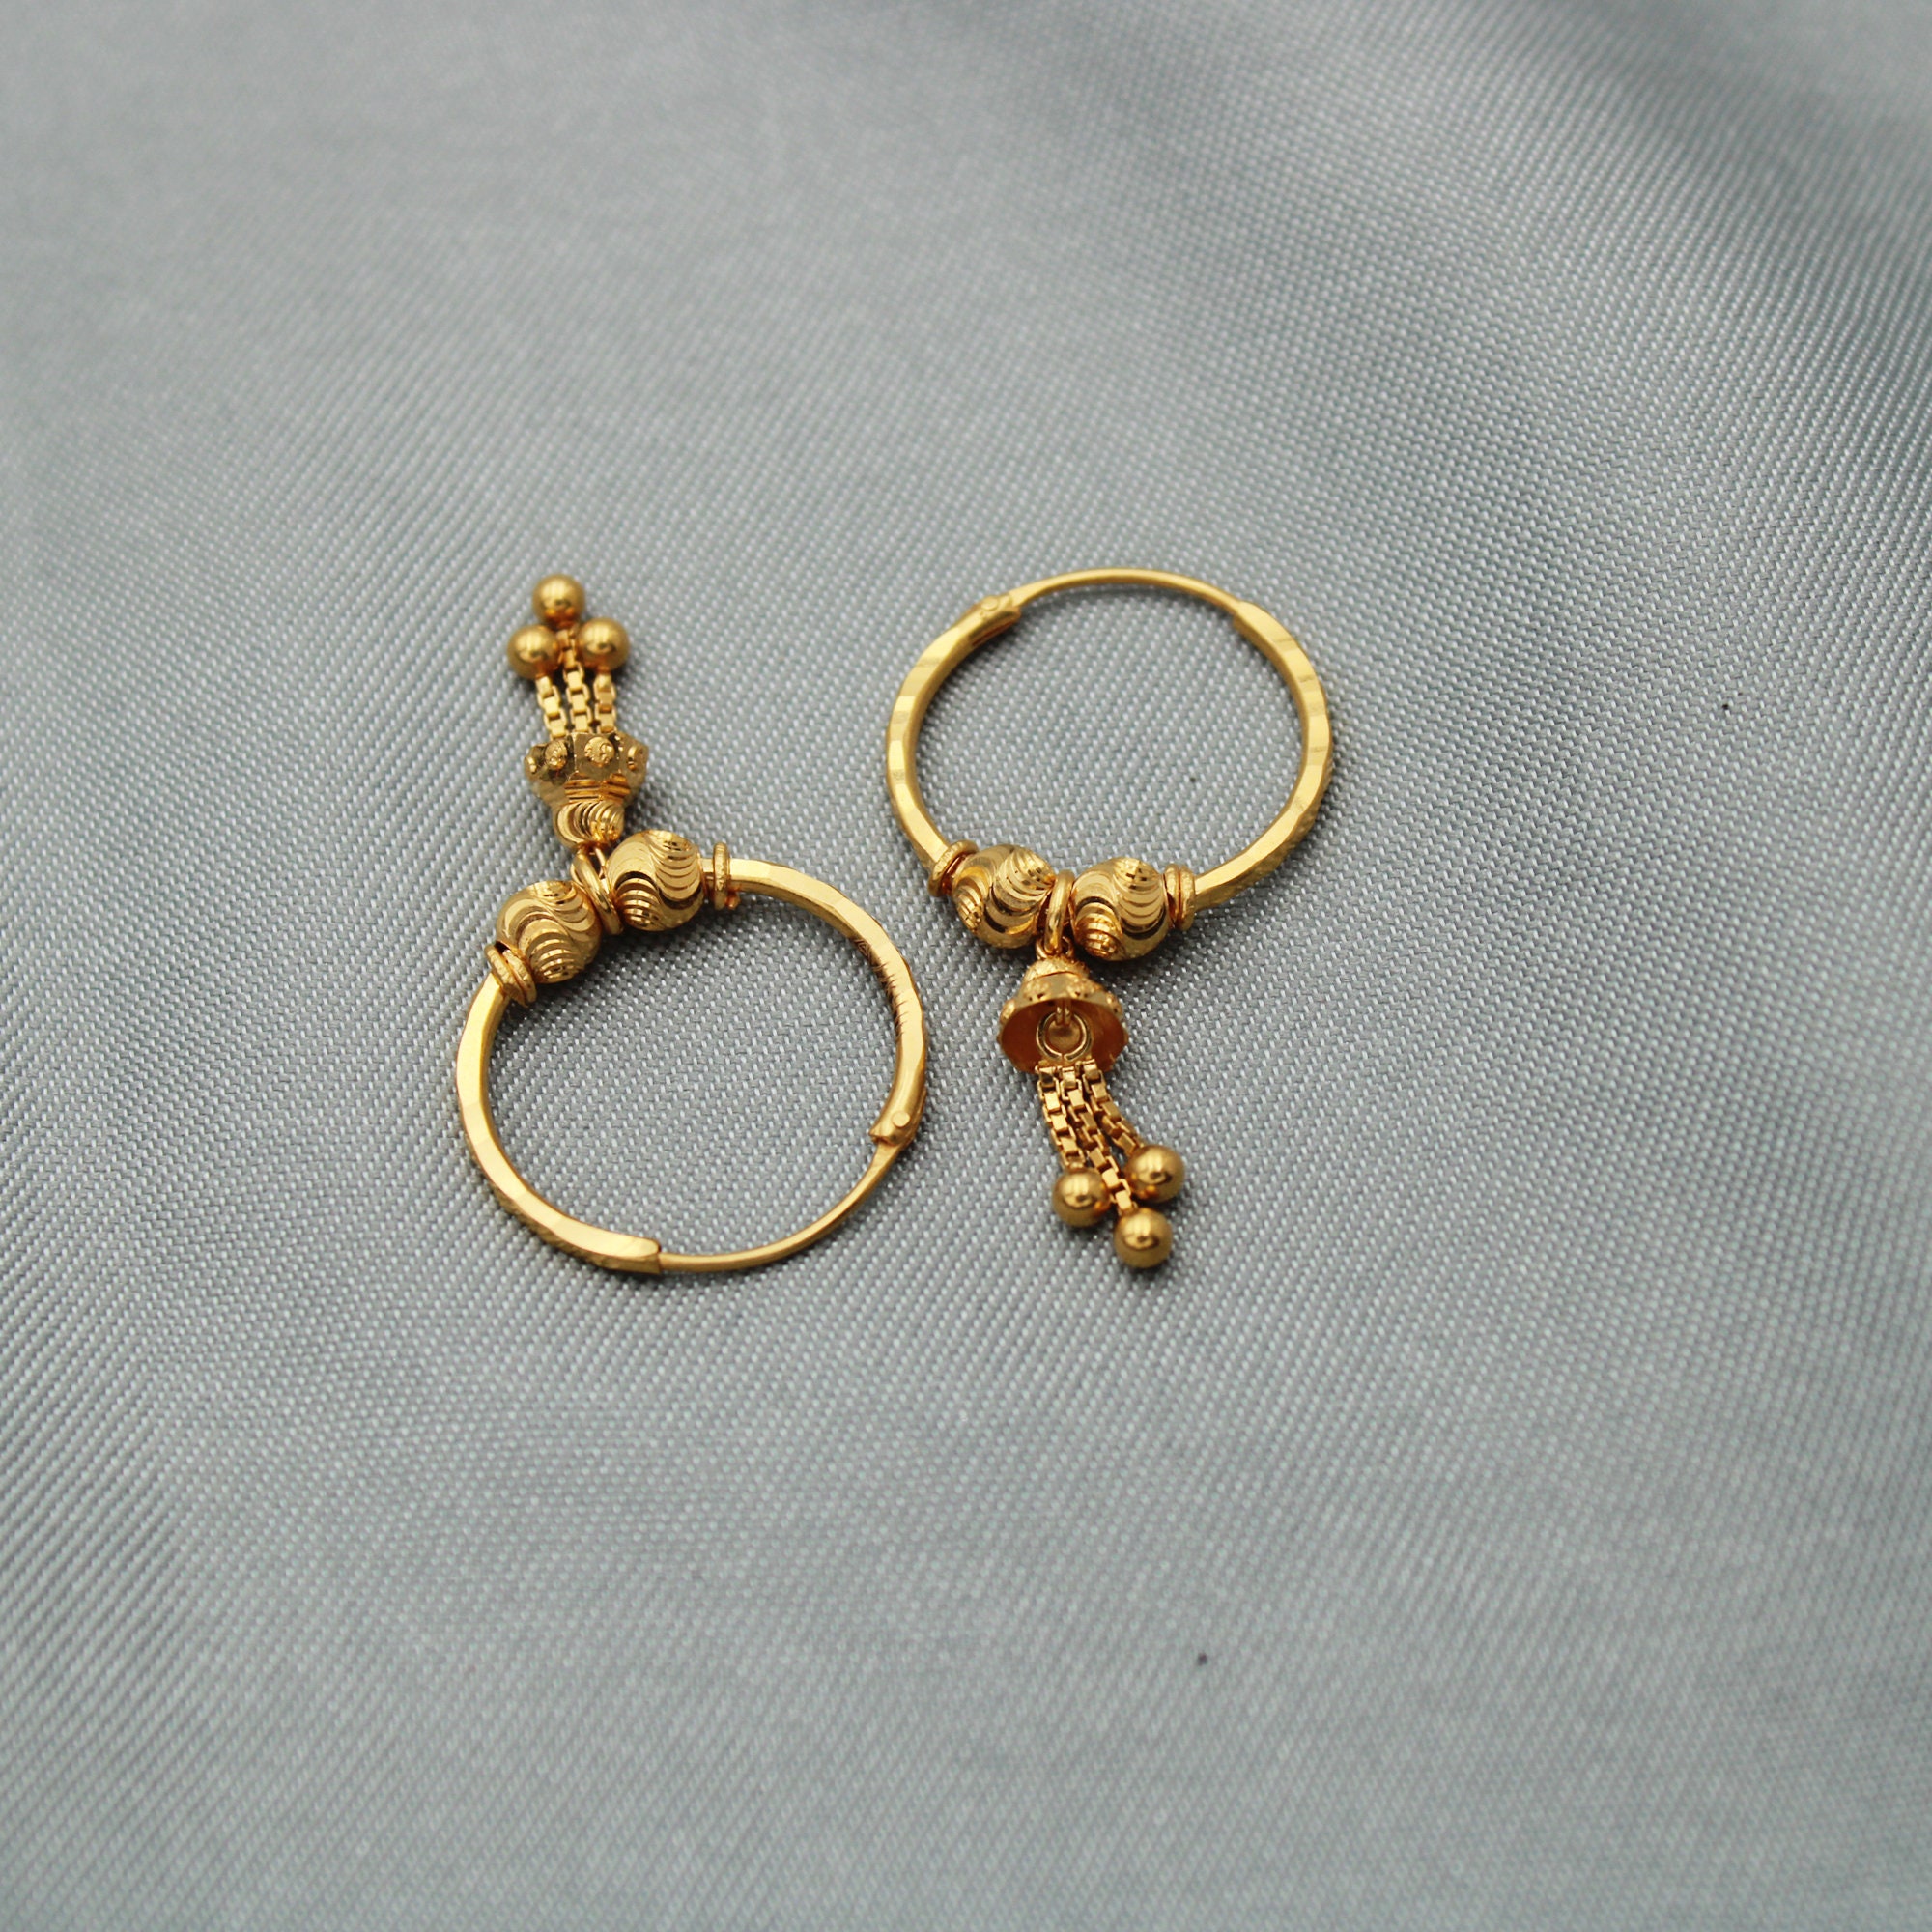 22k Yellow Gold Hoop Earrings Bali Earrings huggies 